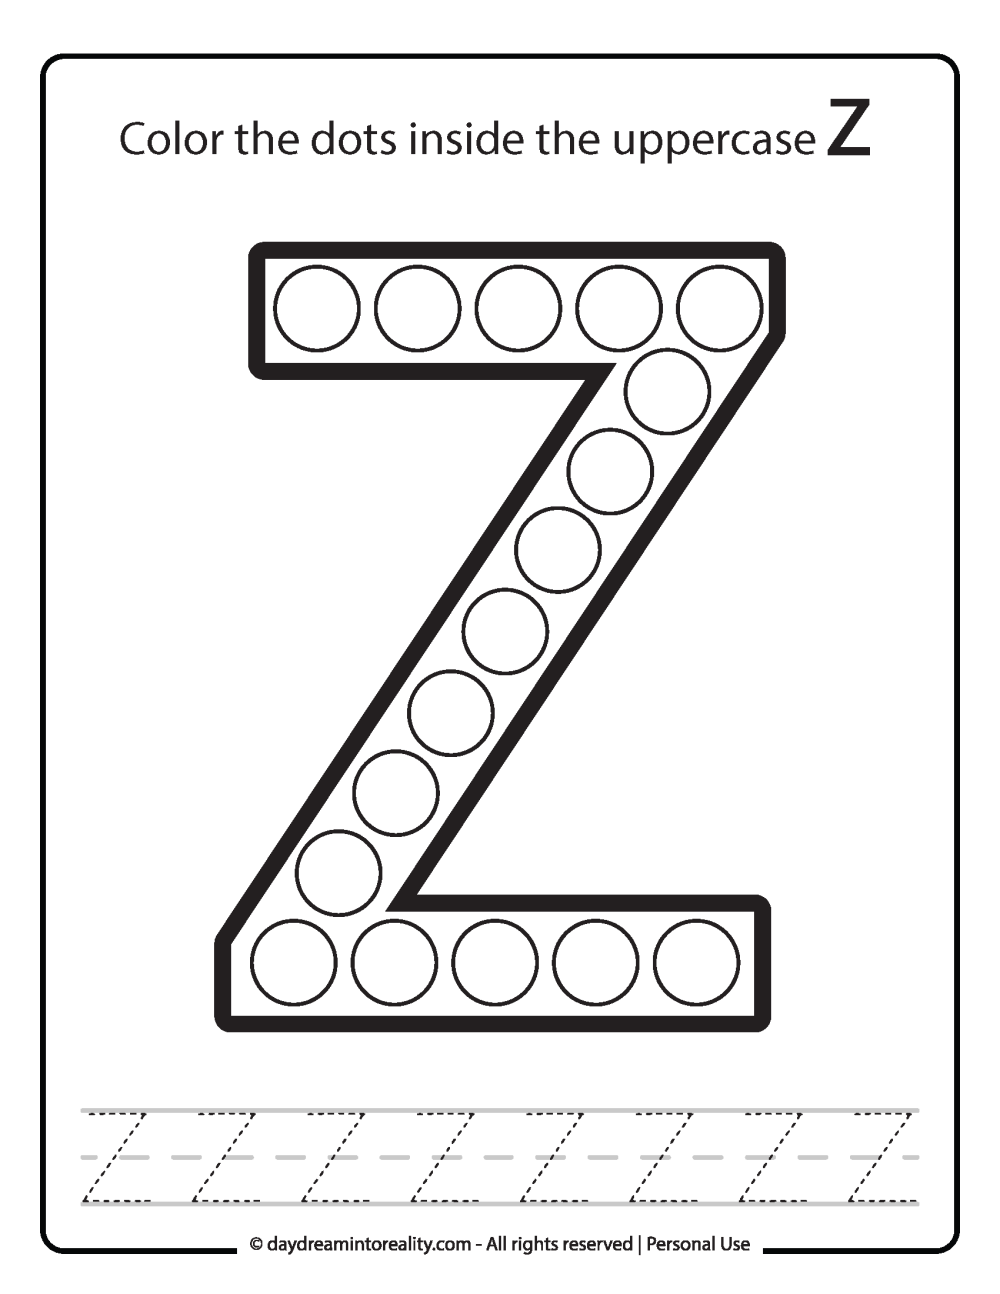 Uppercase "Z" Dot Marker Worksheet Free Printable activity for kids (preschool, kindergarten)